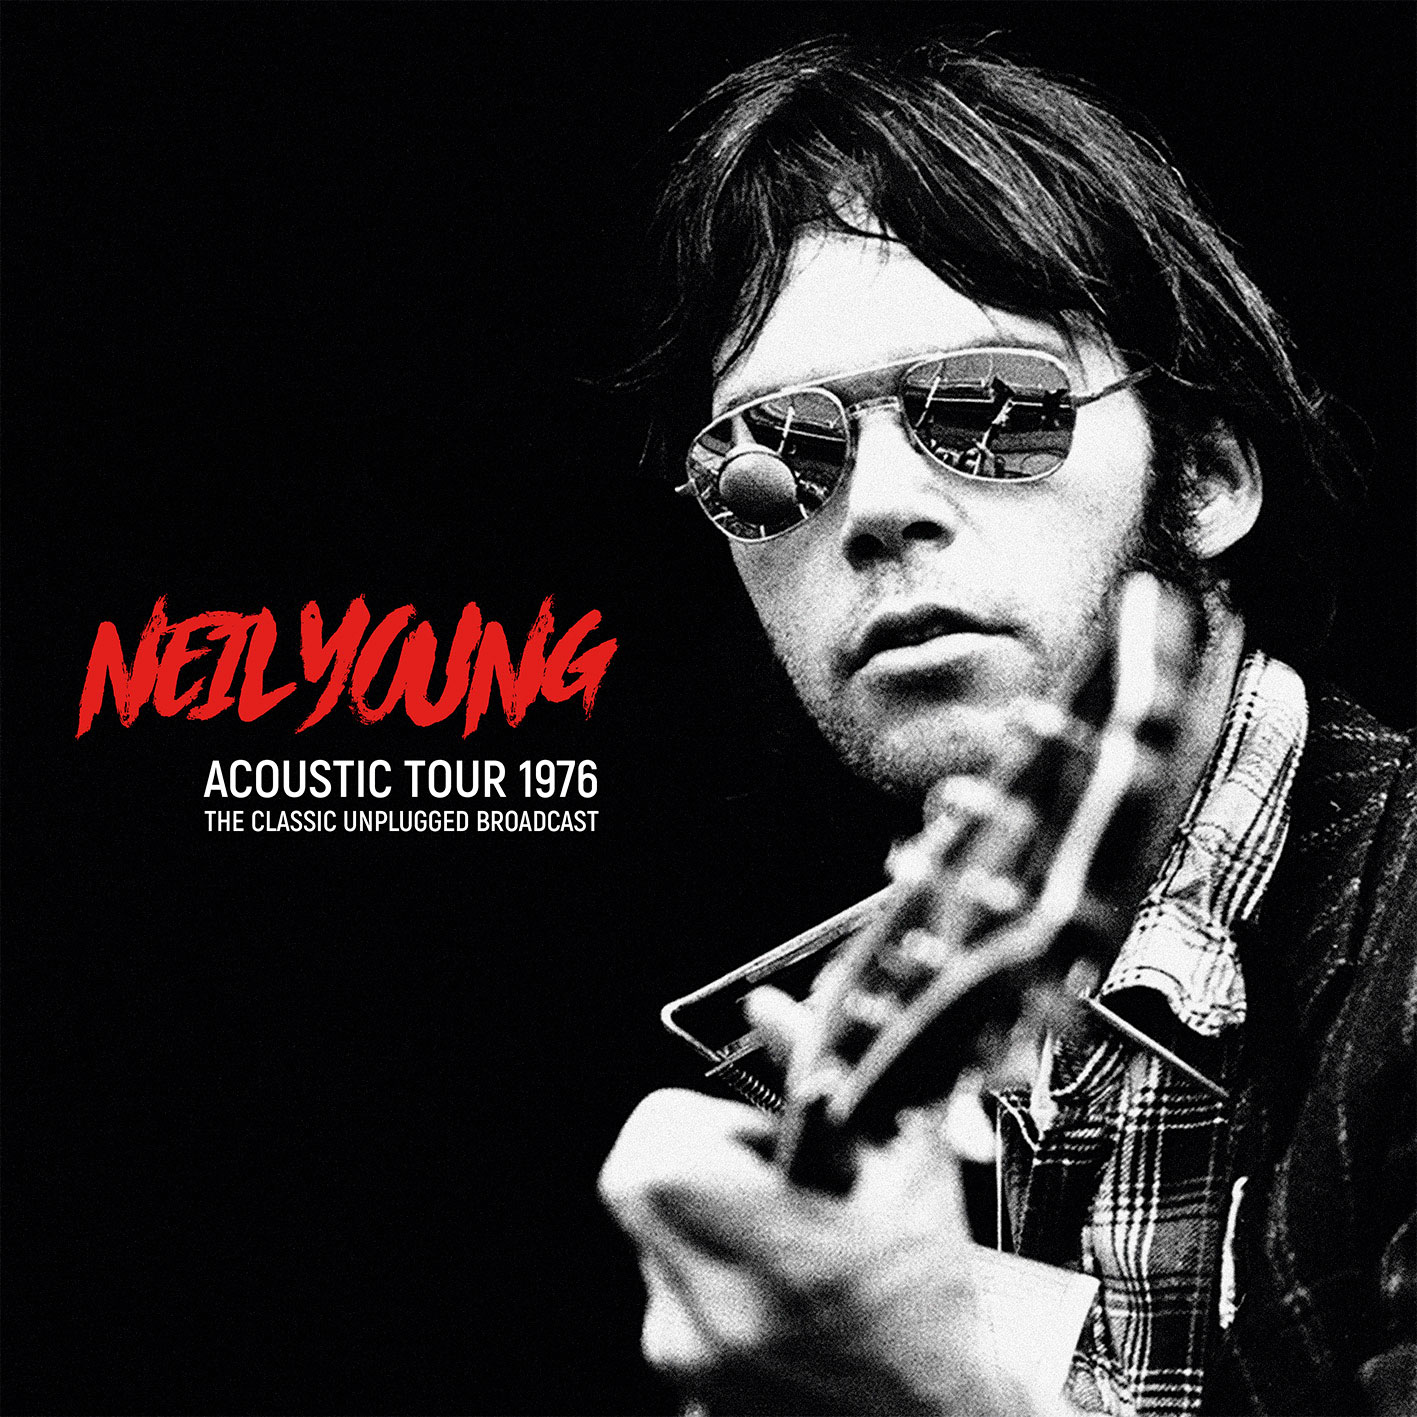 Neil Young Acoustic Tour 1976 MVD Entertainment Group B2B